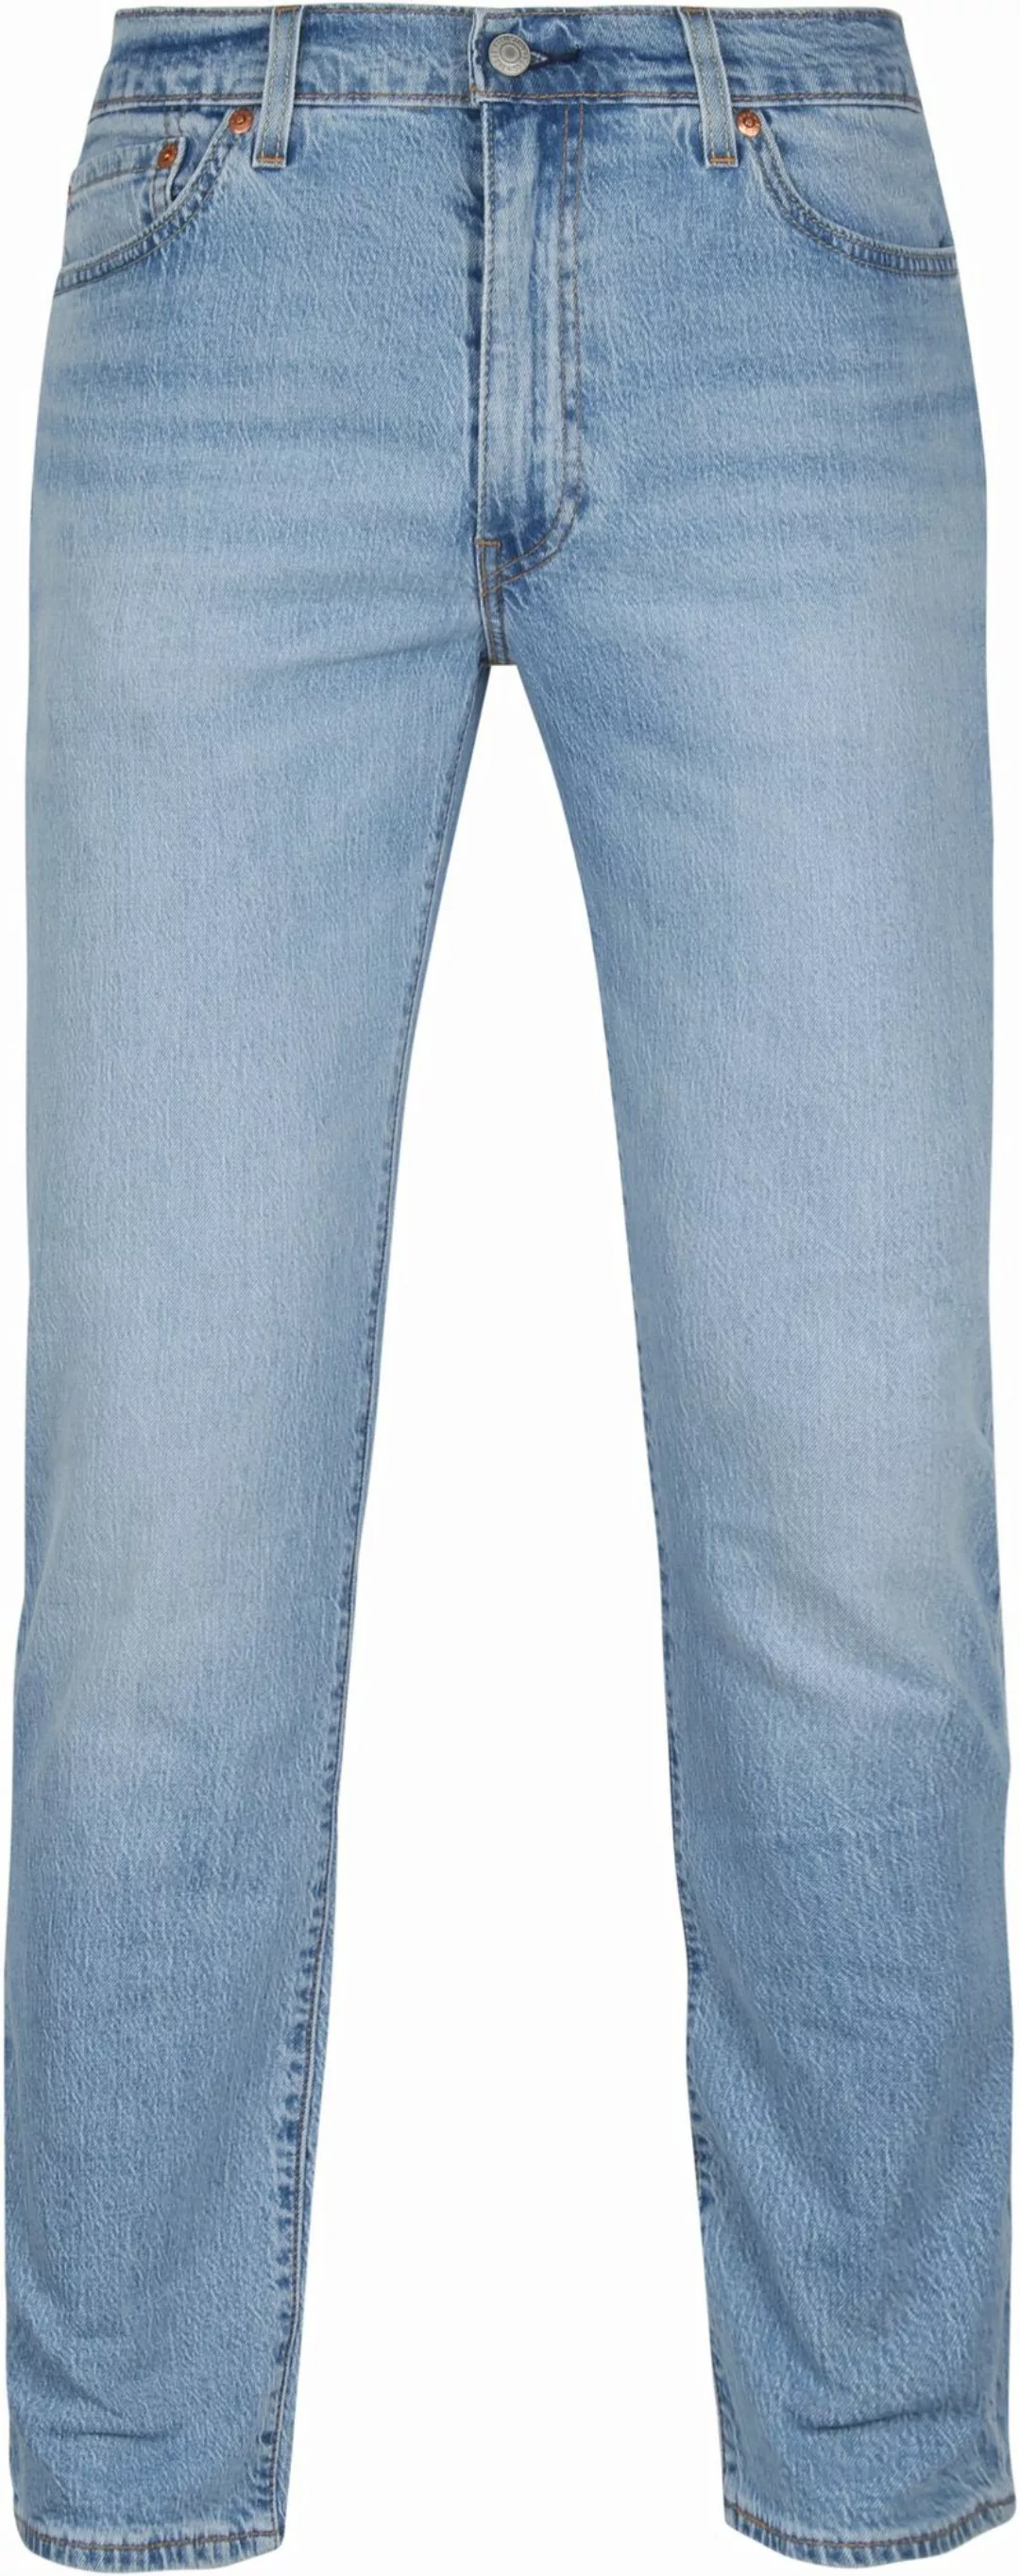 Levi's 511 Jeanshose Blau - Größe W 34 - L 34 günstig online kaufen